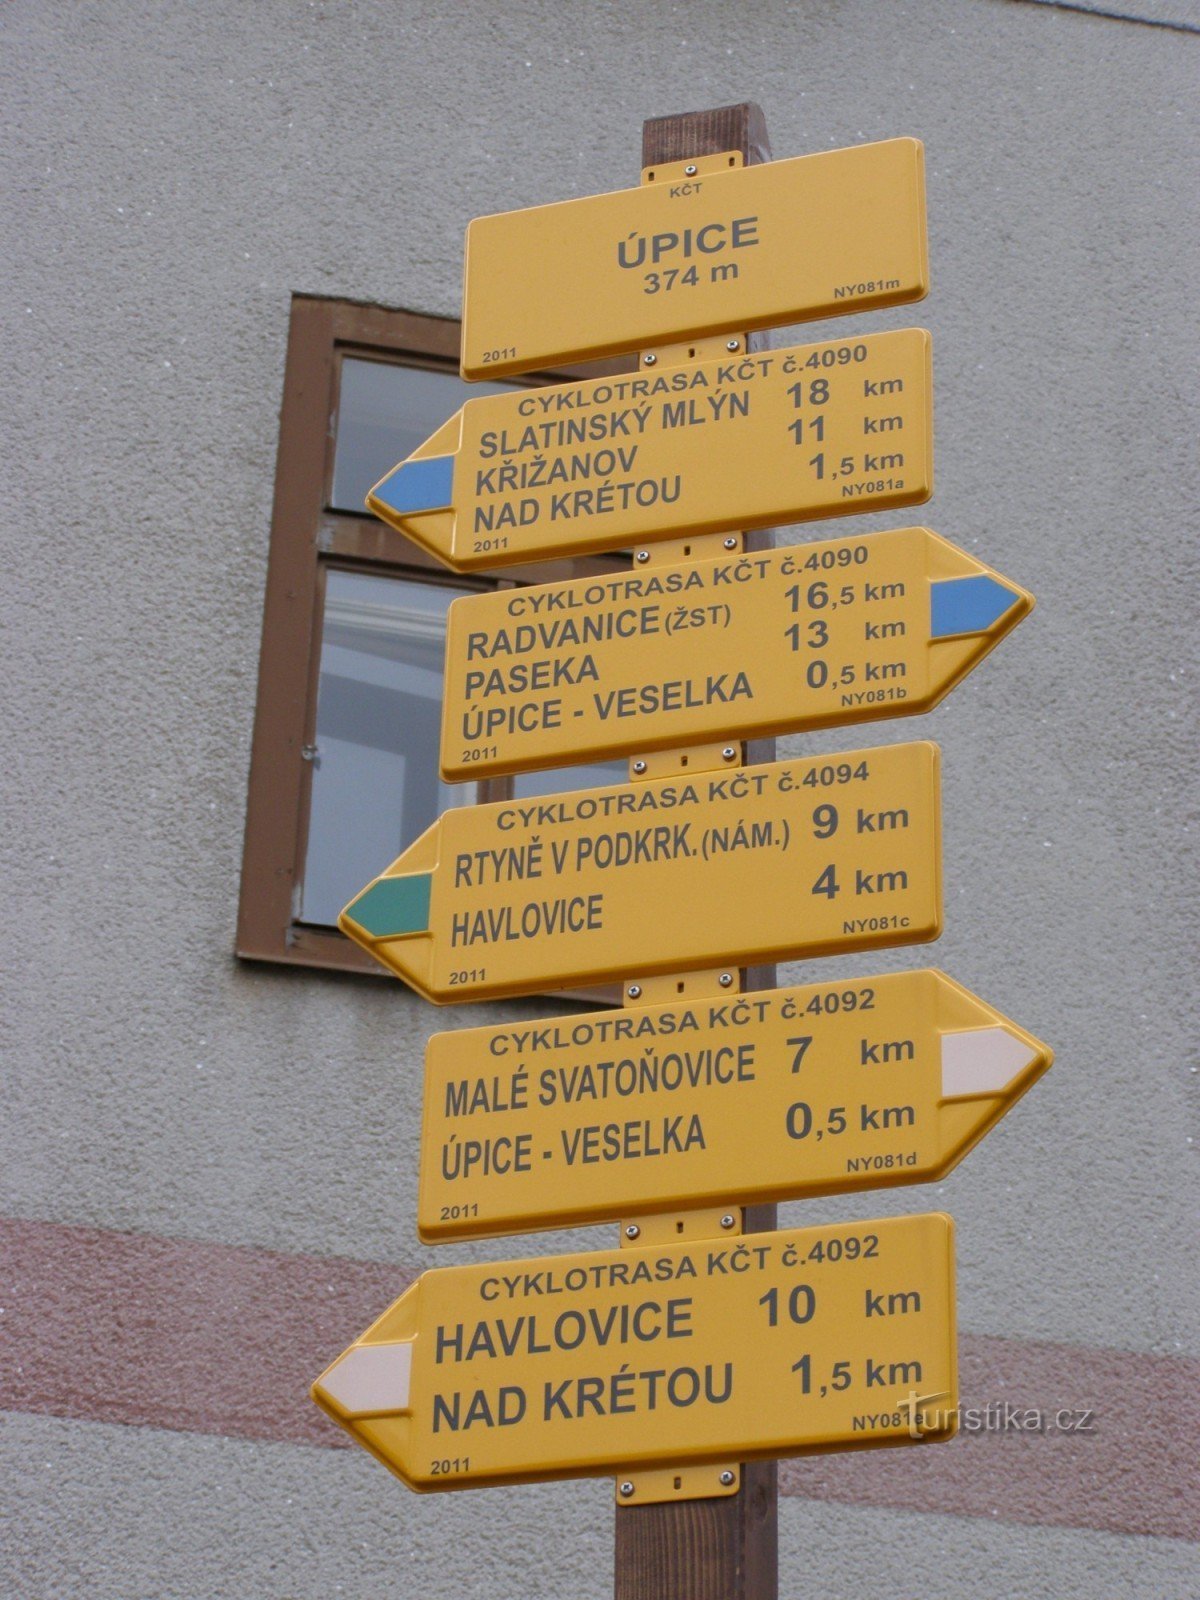 ποδηλατική τουριστική διασταύρωση Úpice - πλατεία TG Masaryk